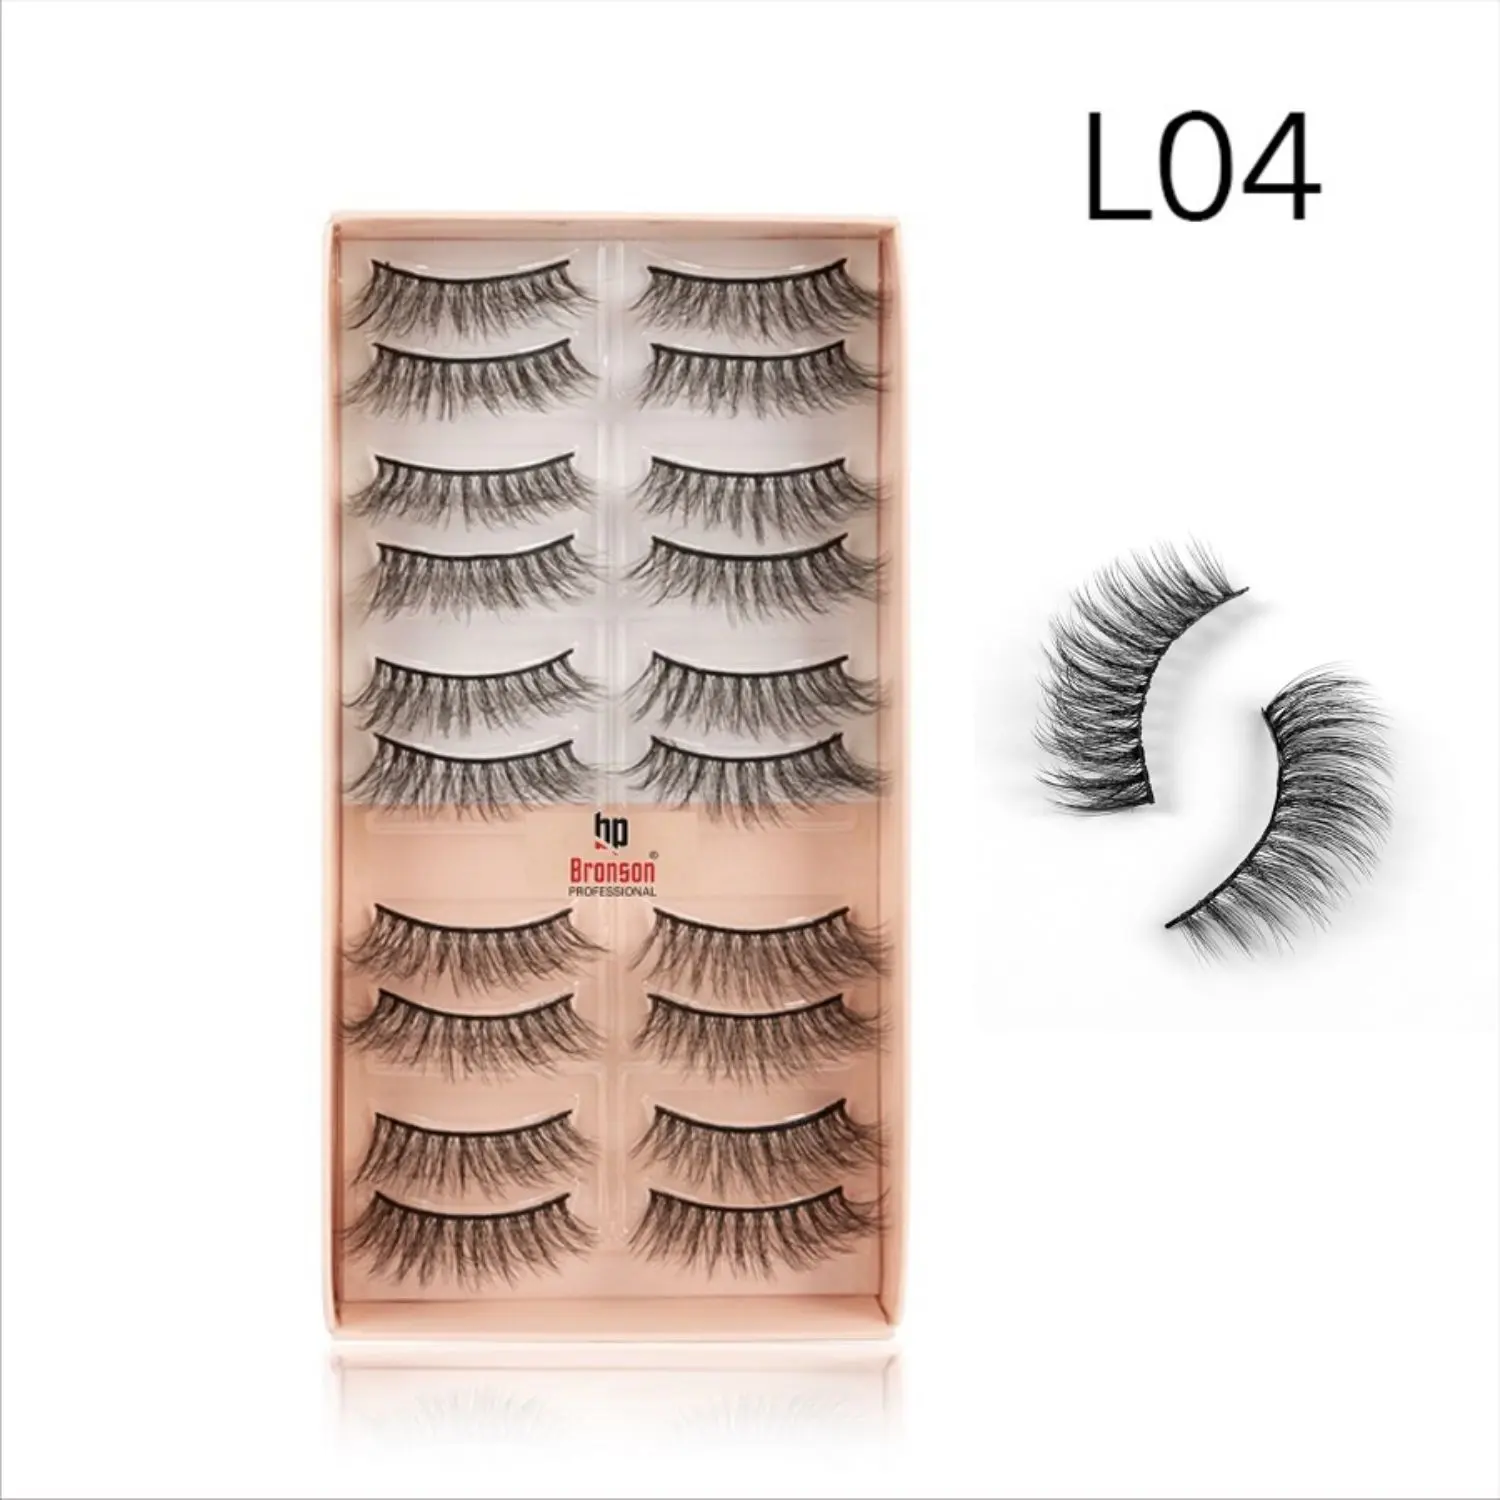 Bronson Professional Eyelash set 3D false long and natural eye makeup 10 pairs No. 4